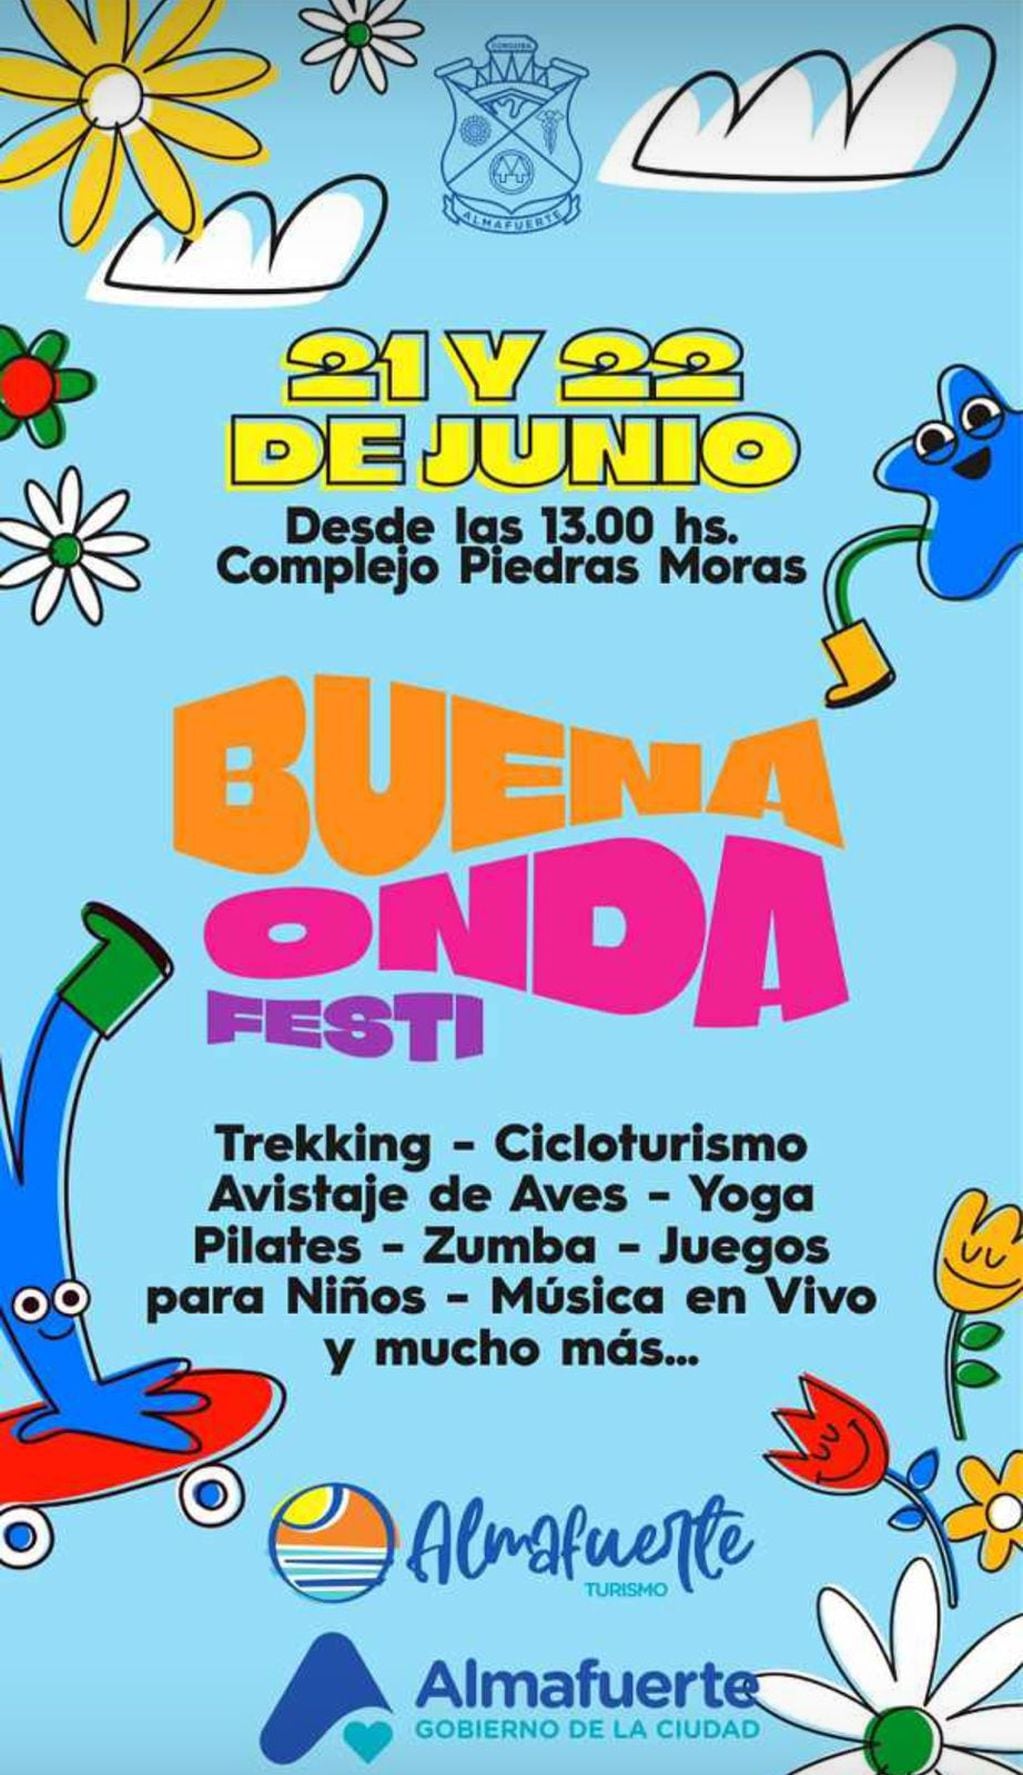 Buena Onda Festi será el viernes 21 y sábado 22 de junio en Almafuerte, Córdoba.